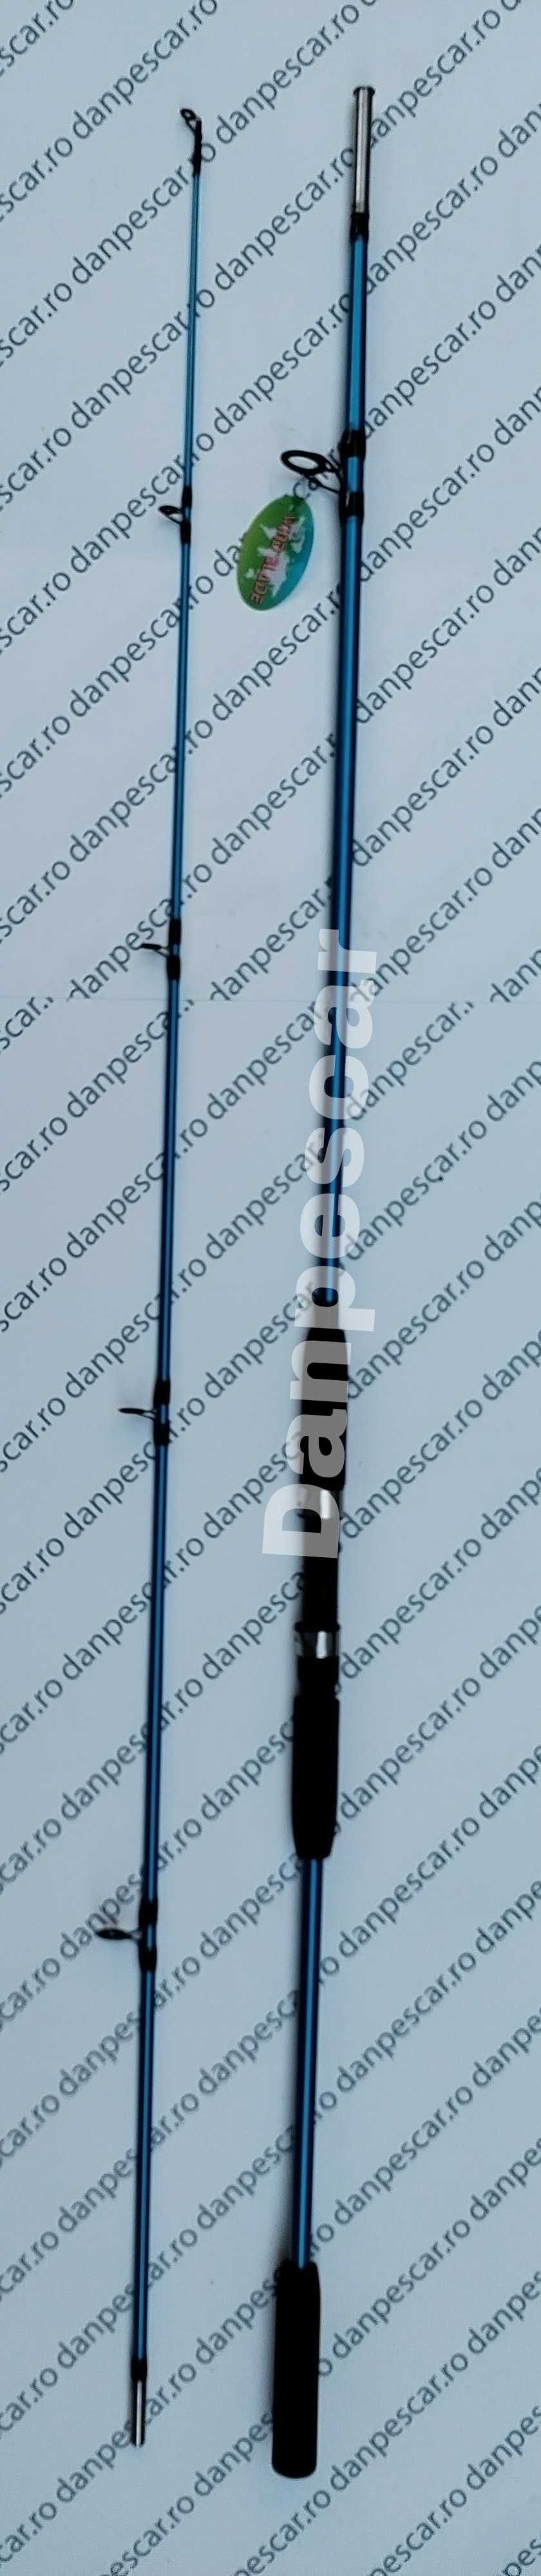 Lanseta WB fibra plina 2,70m pescuit la dunare 60-180gr Albastra